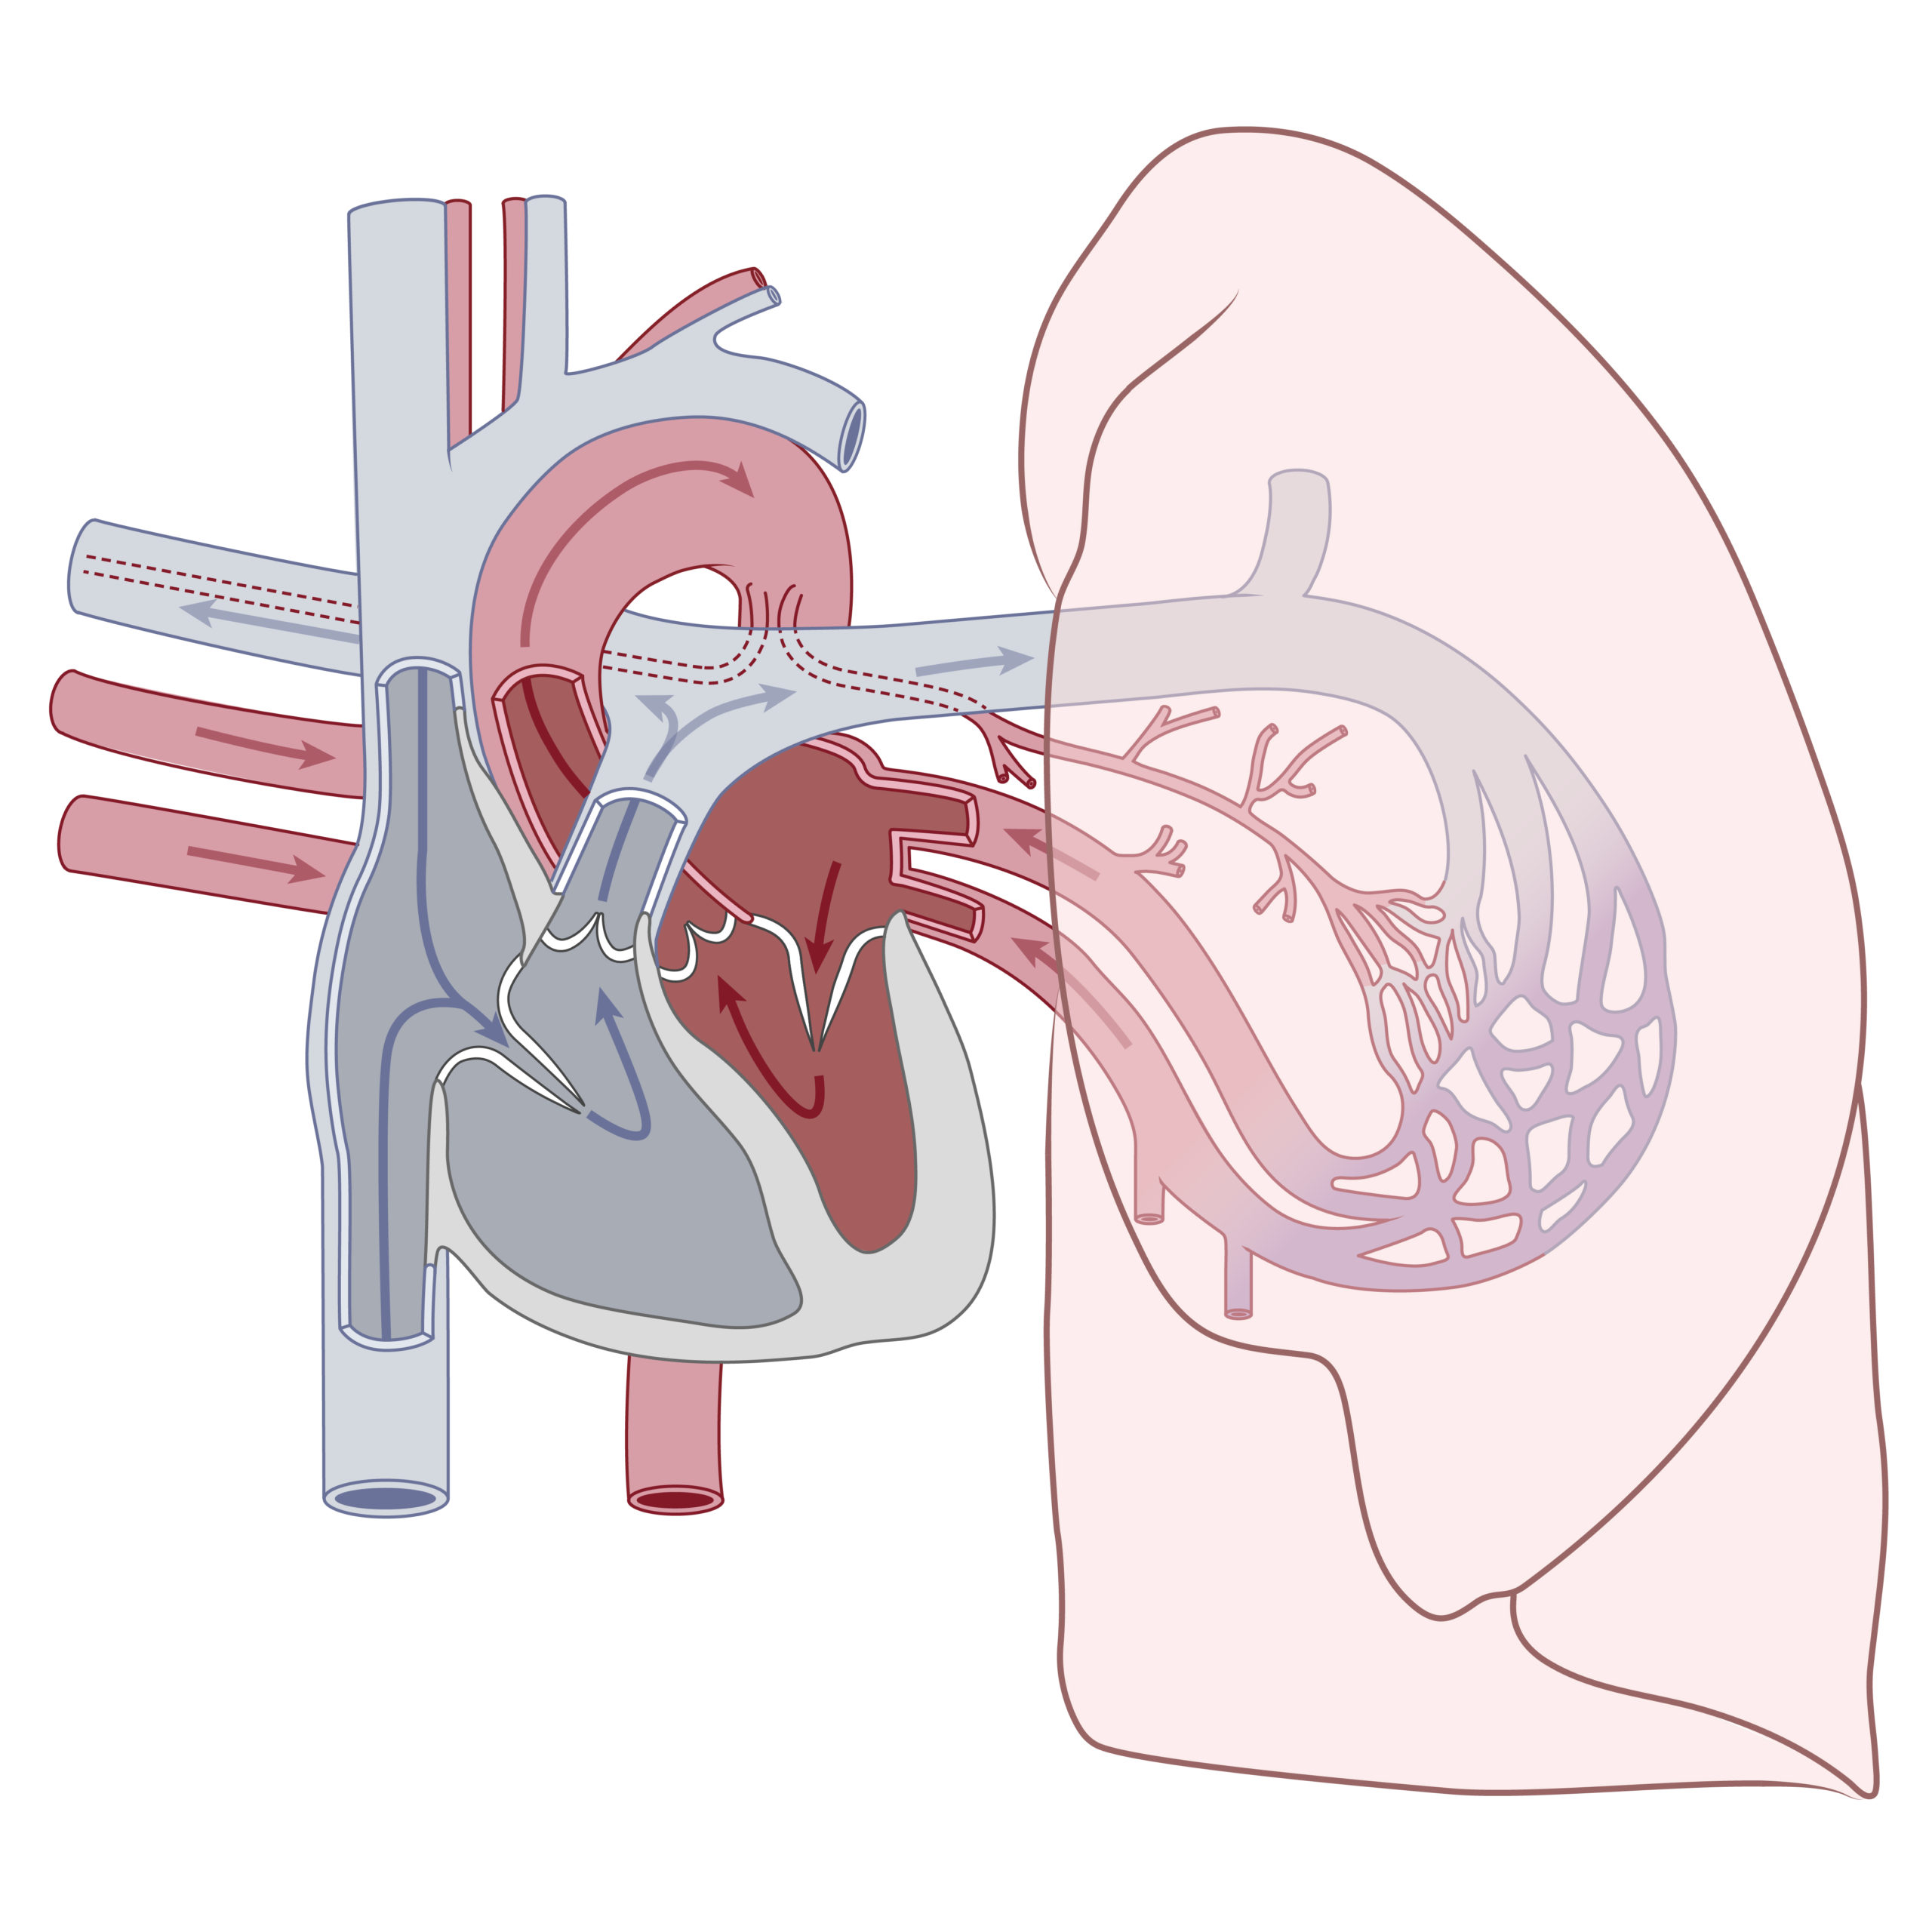 Medizinische Infografik, die den Blutkreislauf zwischen Herz und Lunge darstellt, der Lungenkreislauf